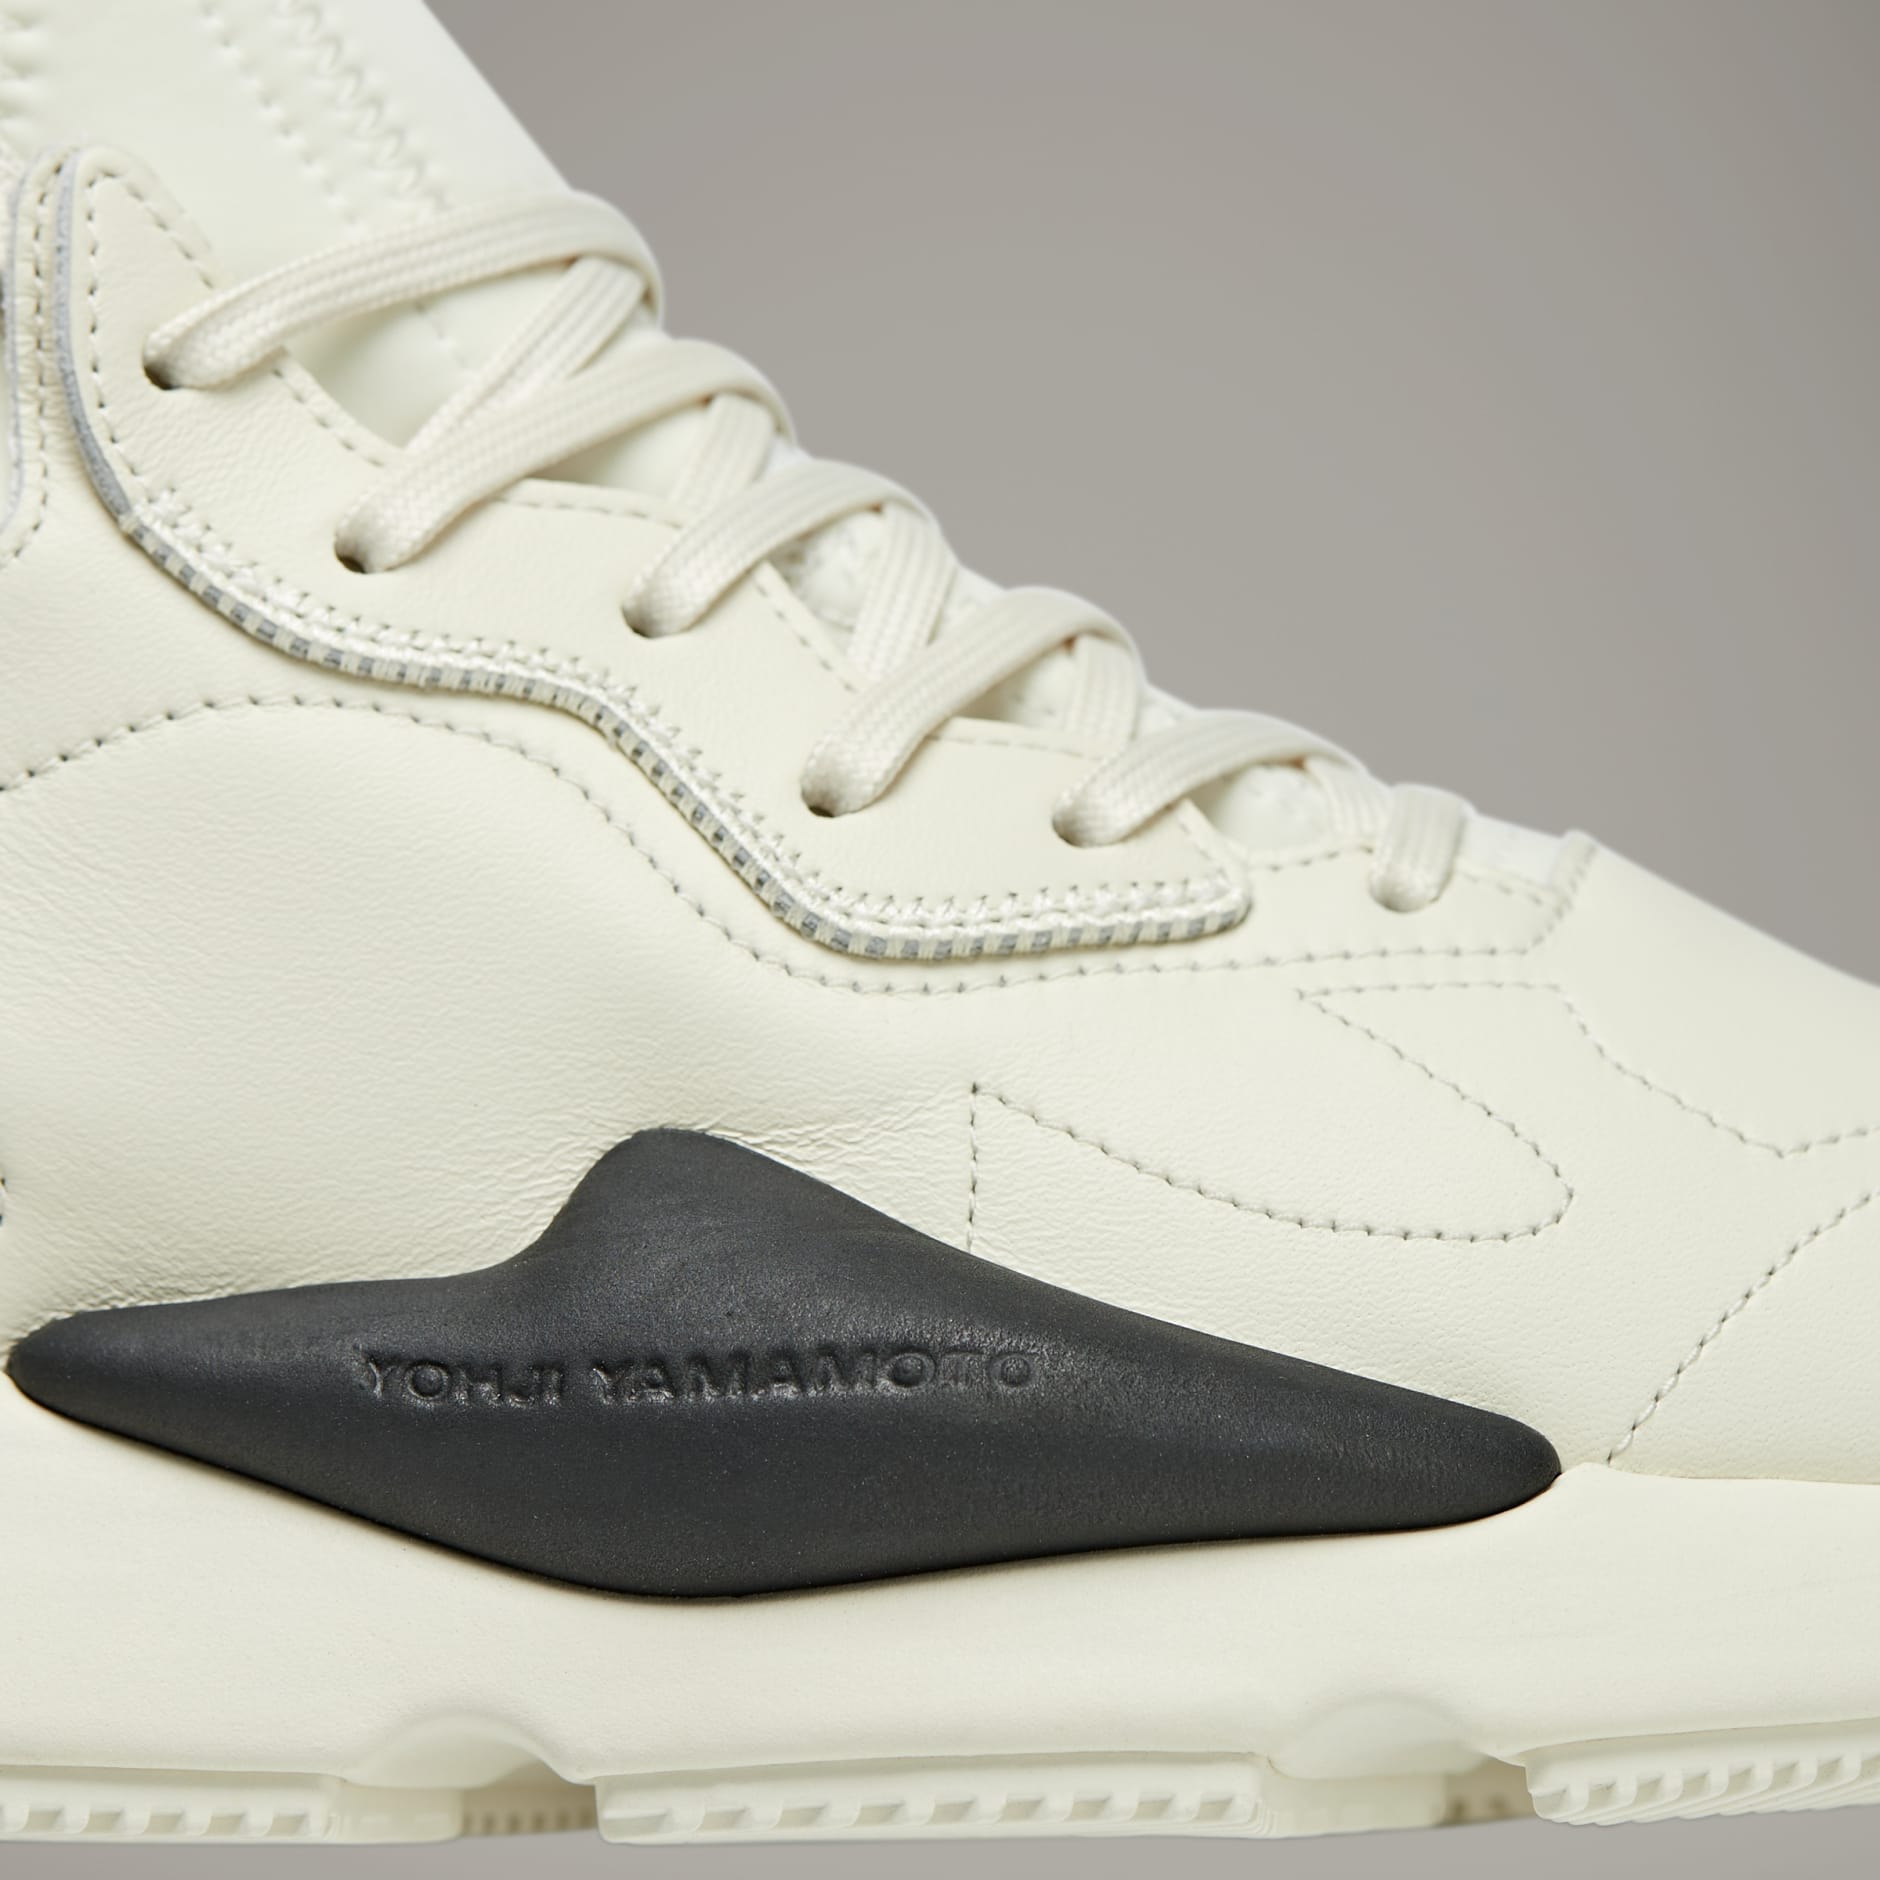 Shoes - Y-3 Kaiwa - White | adidas Oman